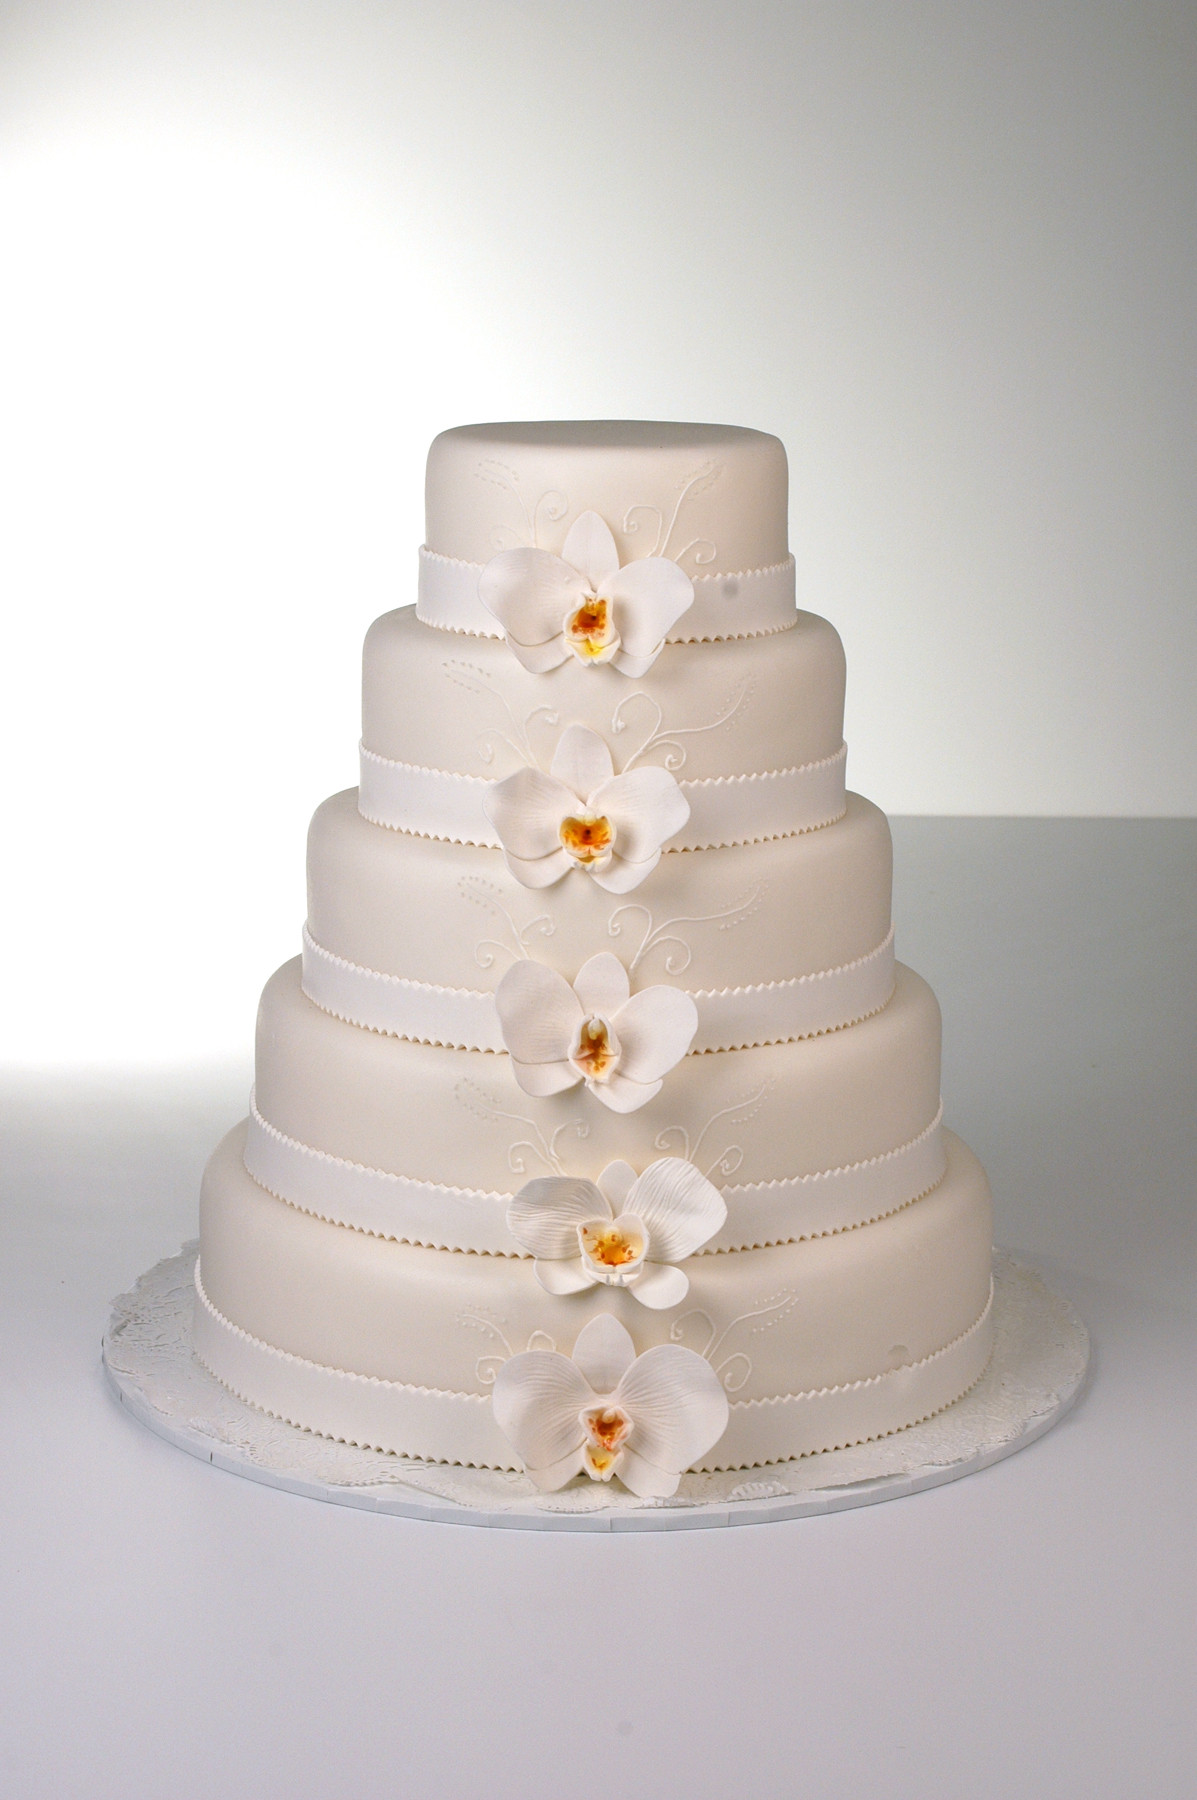 Ukrops Wedding Cakes the Best Ukrops Wedding Cakes Idea In 2017